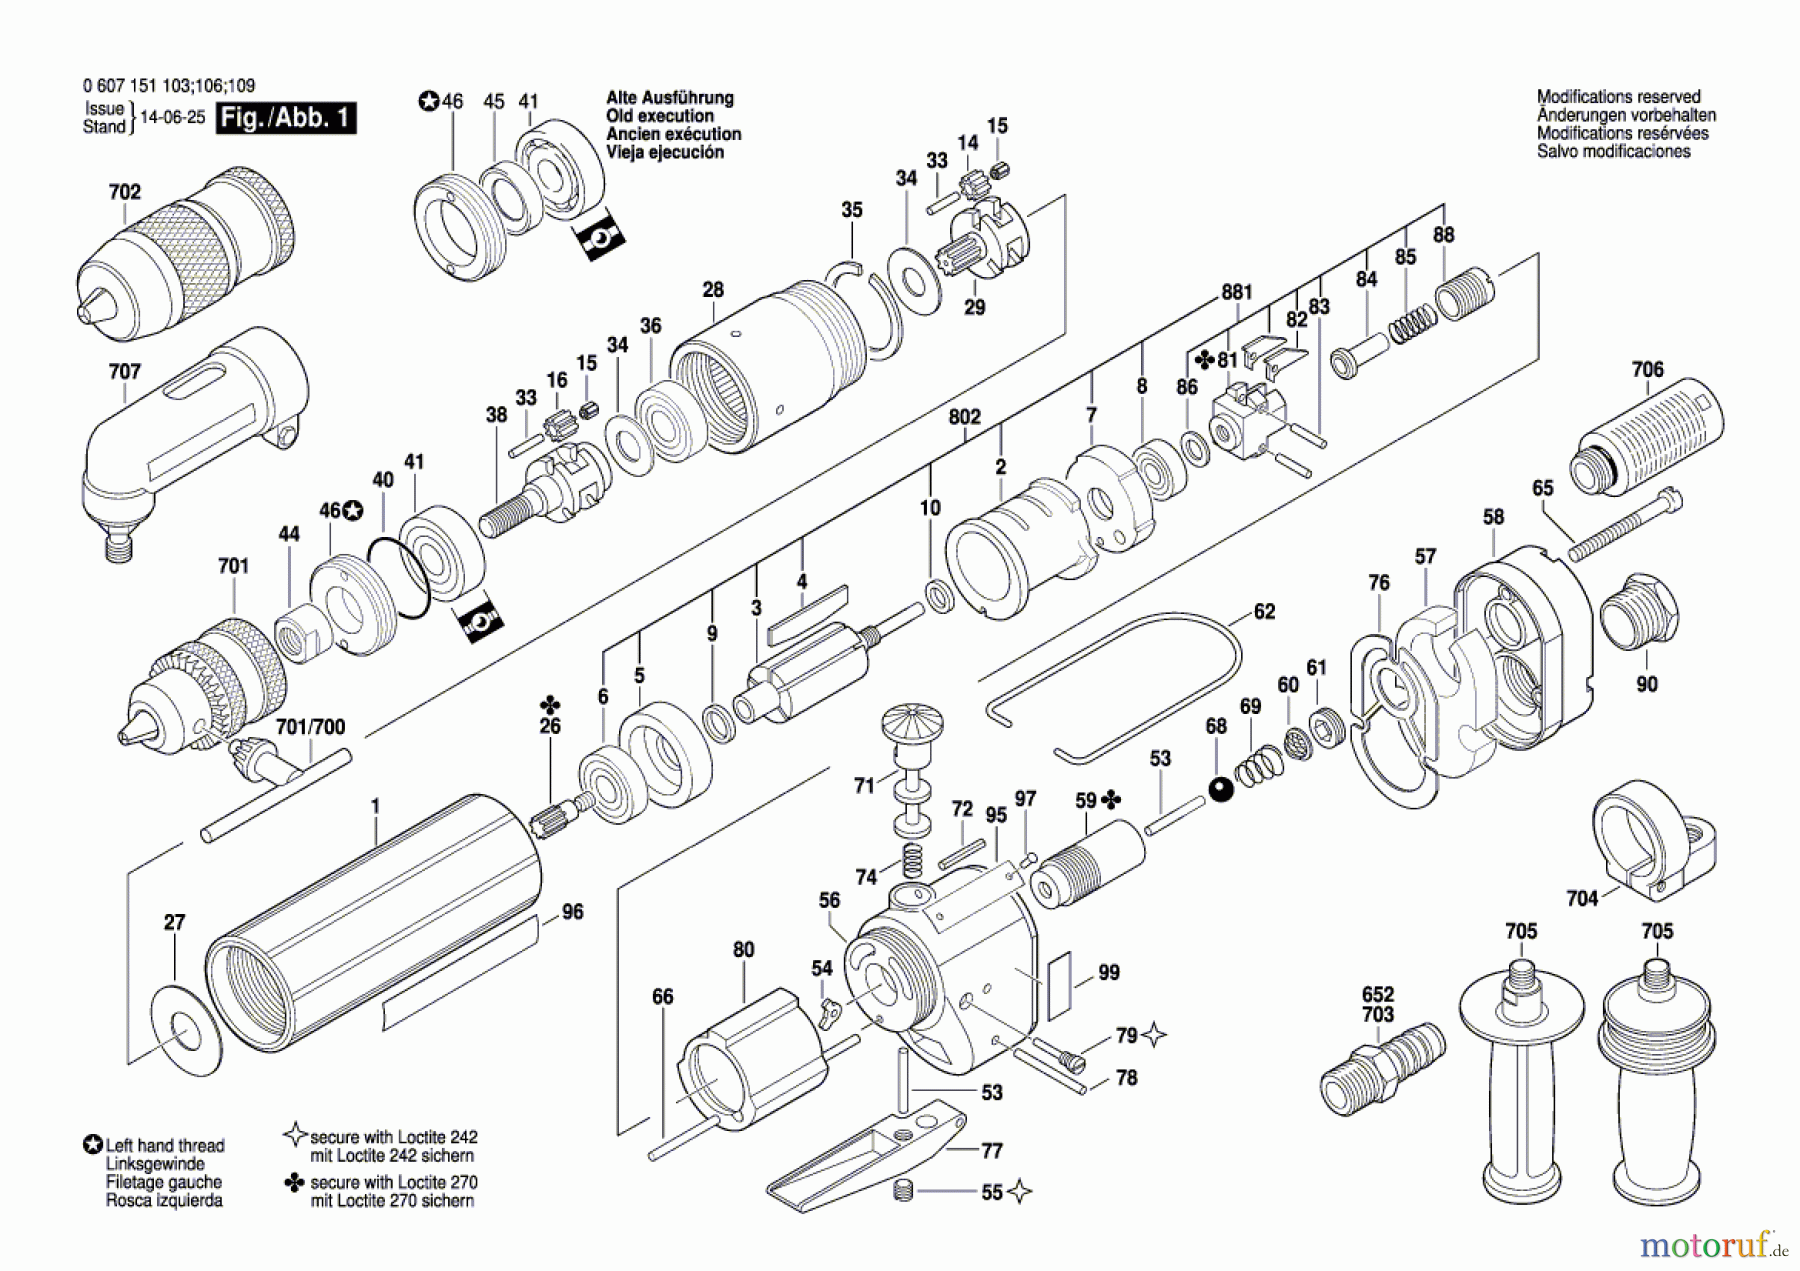  Bosch Werkzeug Pw-Bohrmaschine-Ind 370 WATT-SERIE Seite 1